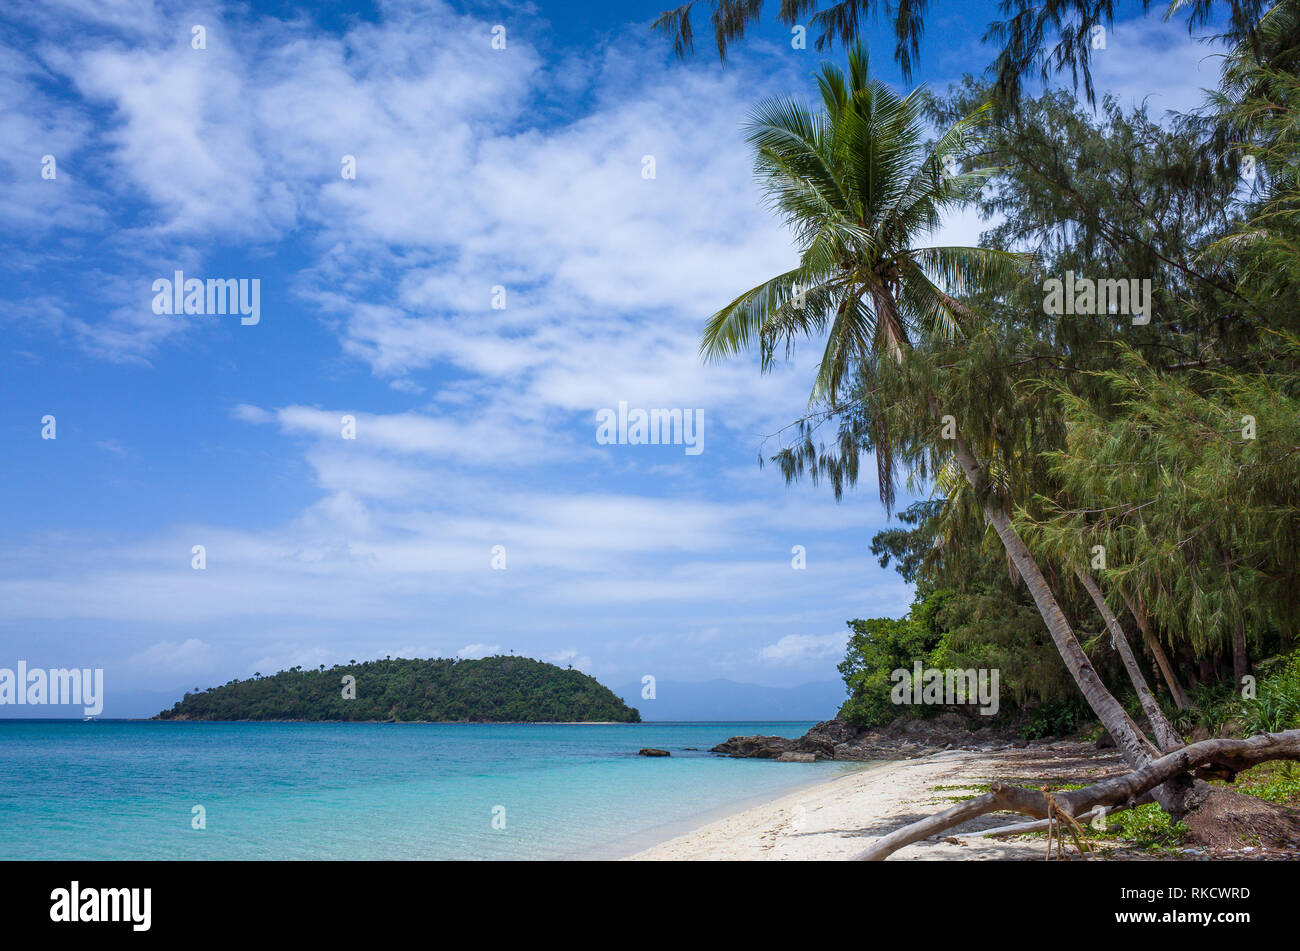 Perfetta piccola isola nel mare turchese, con alberi di palma e il robusto Bonbon Beach, Romblon - Filippine Foto Stock